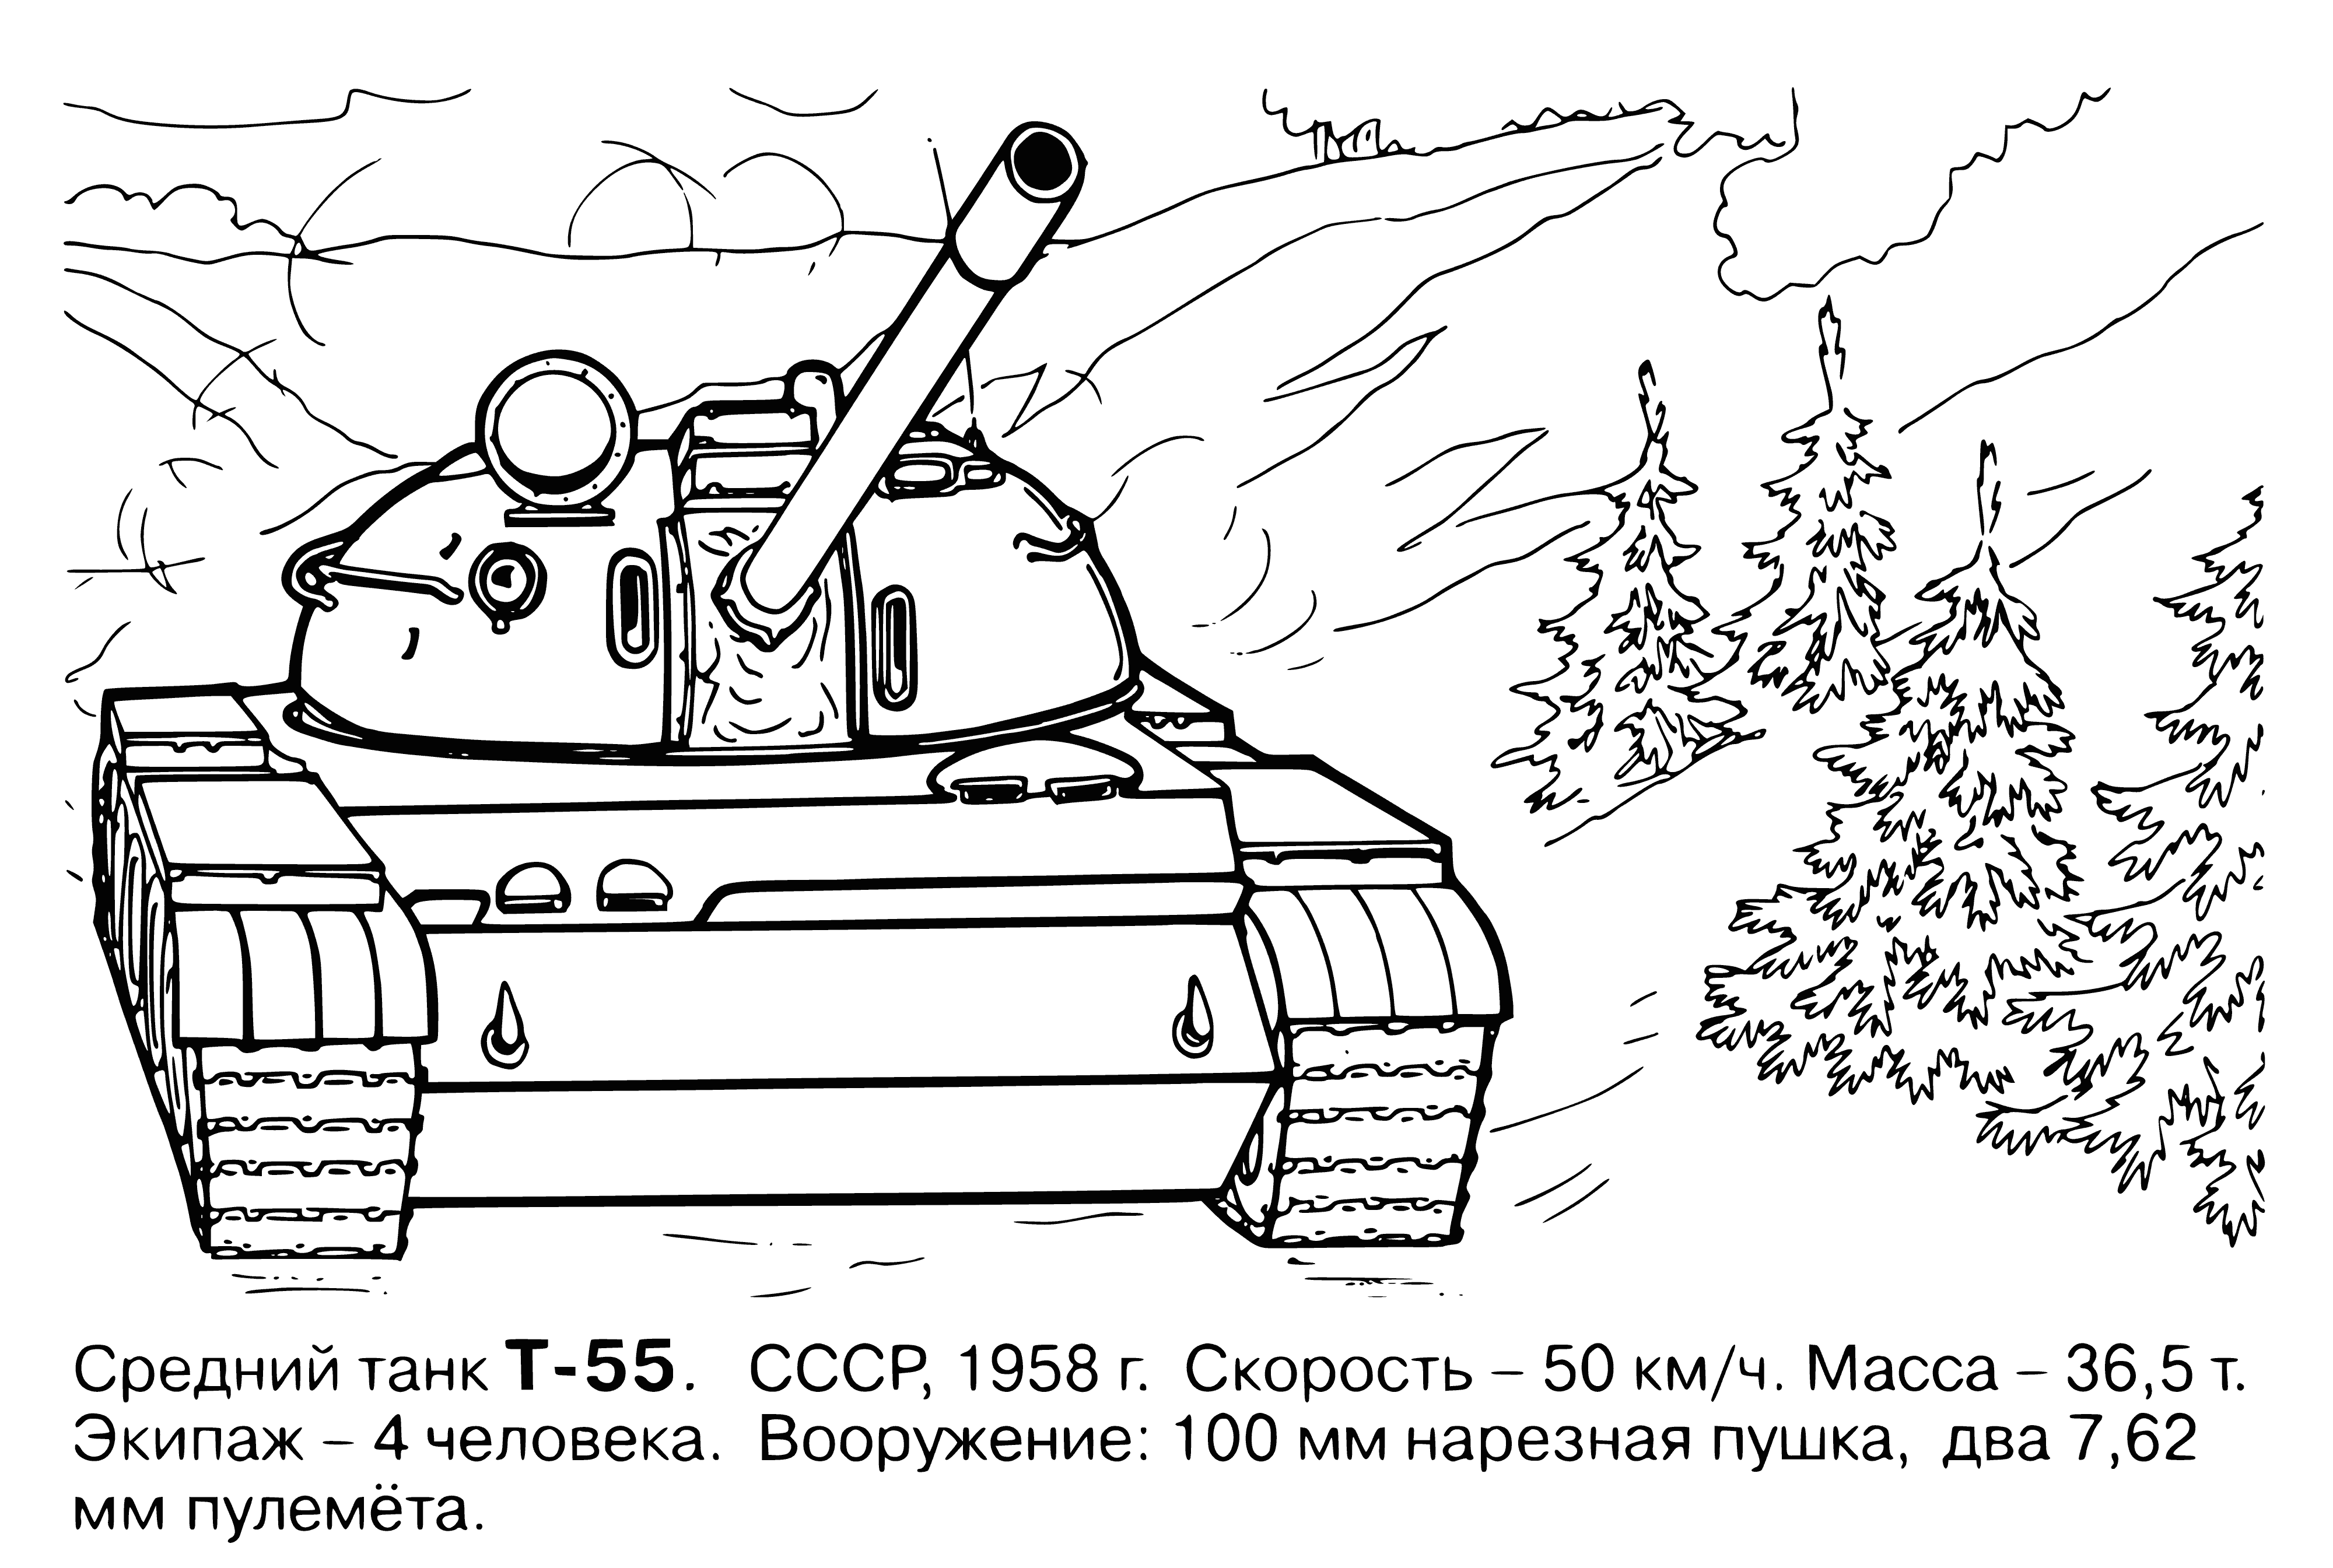 Tank boyama sayfası